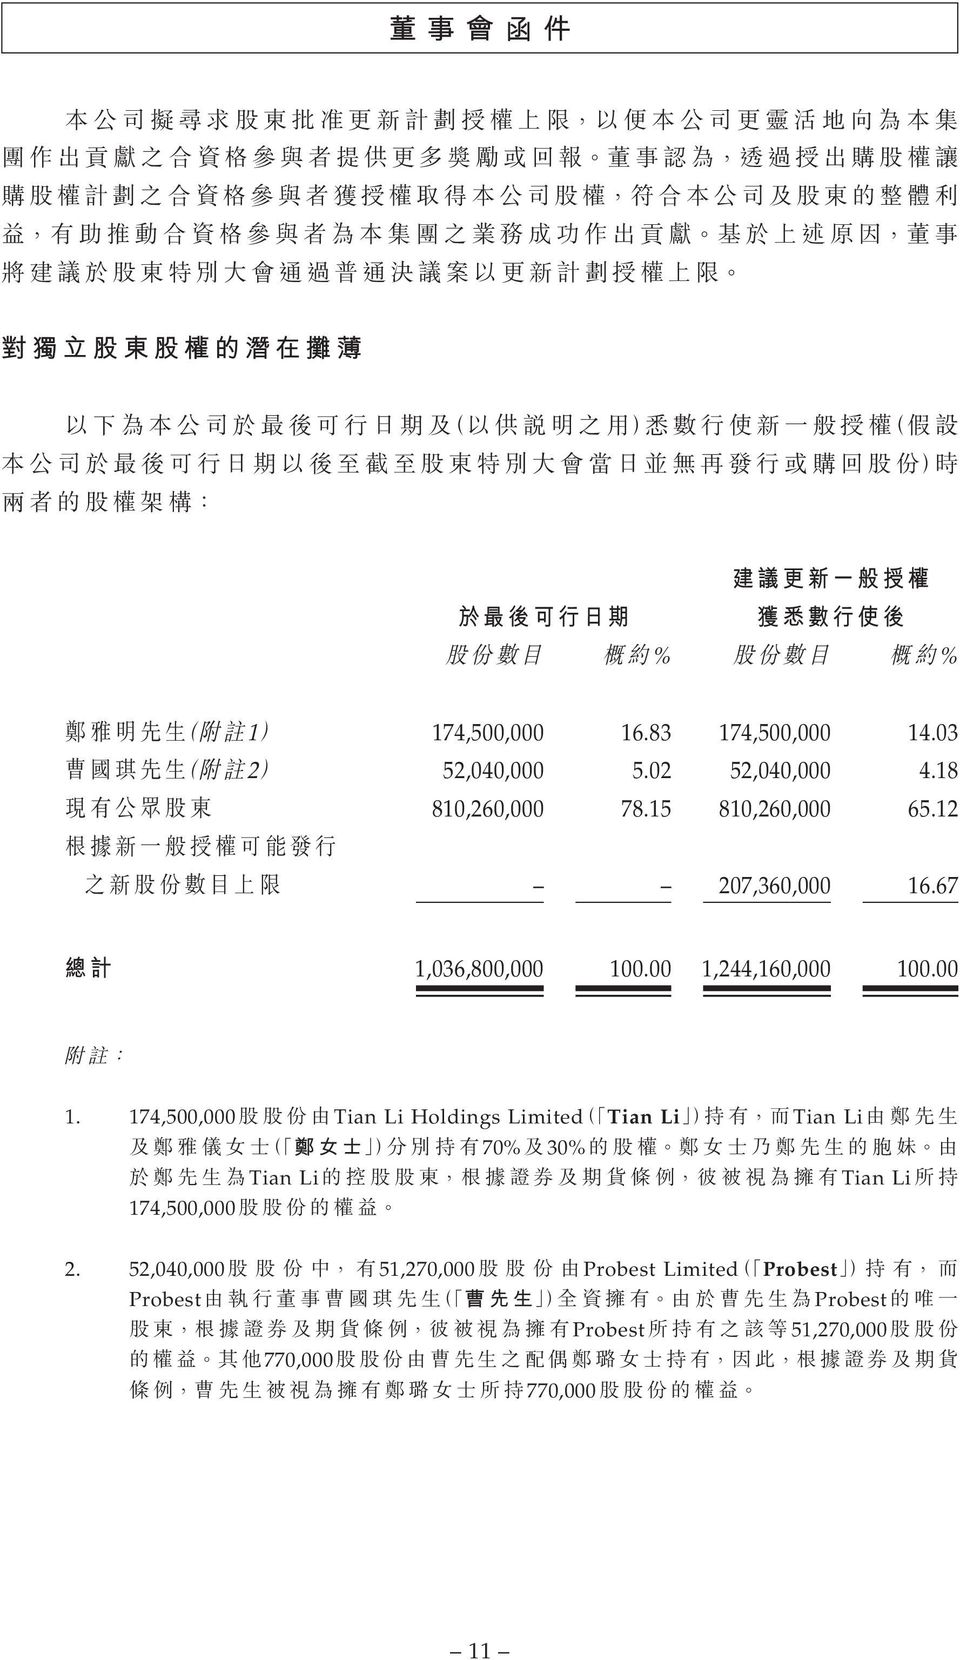 00 1,244,160,000 100.00 1. 174,500,000 Tian Li Holdings LimitedTian LiTian Li 70% 30%